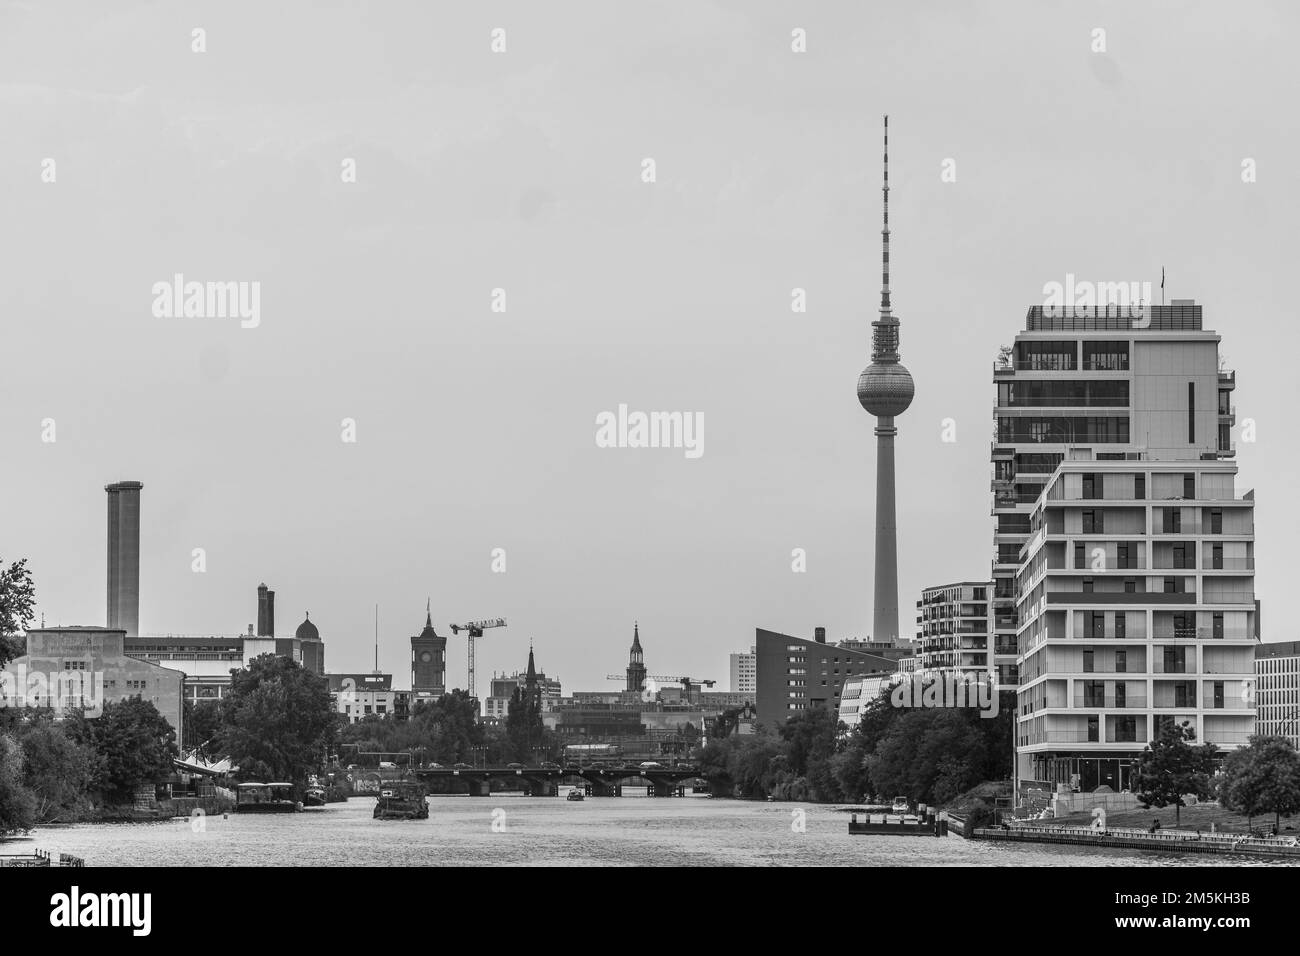 Ein Landschaftsbild des Baus über den Fluss in Berlin, Deutschland, unter dem bewölkten Himmel Stockfoto